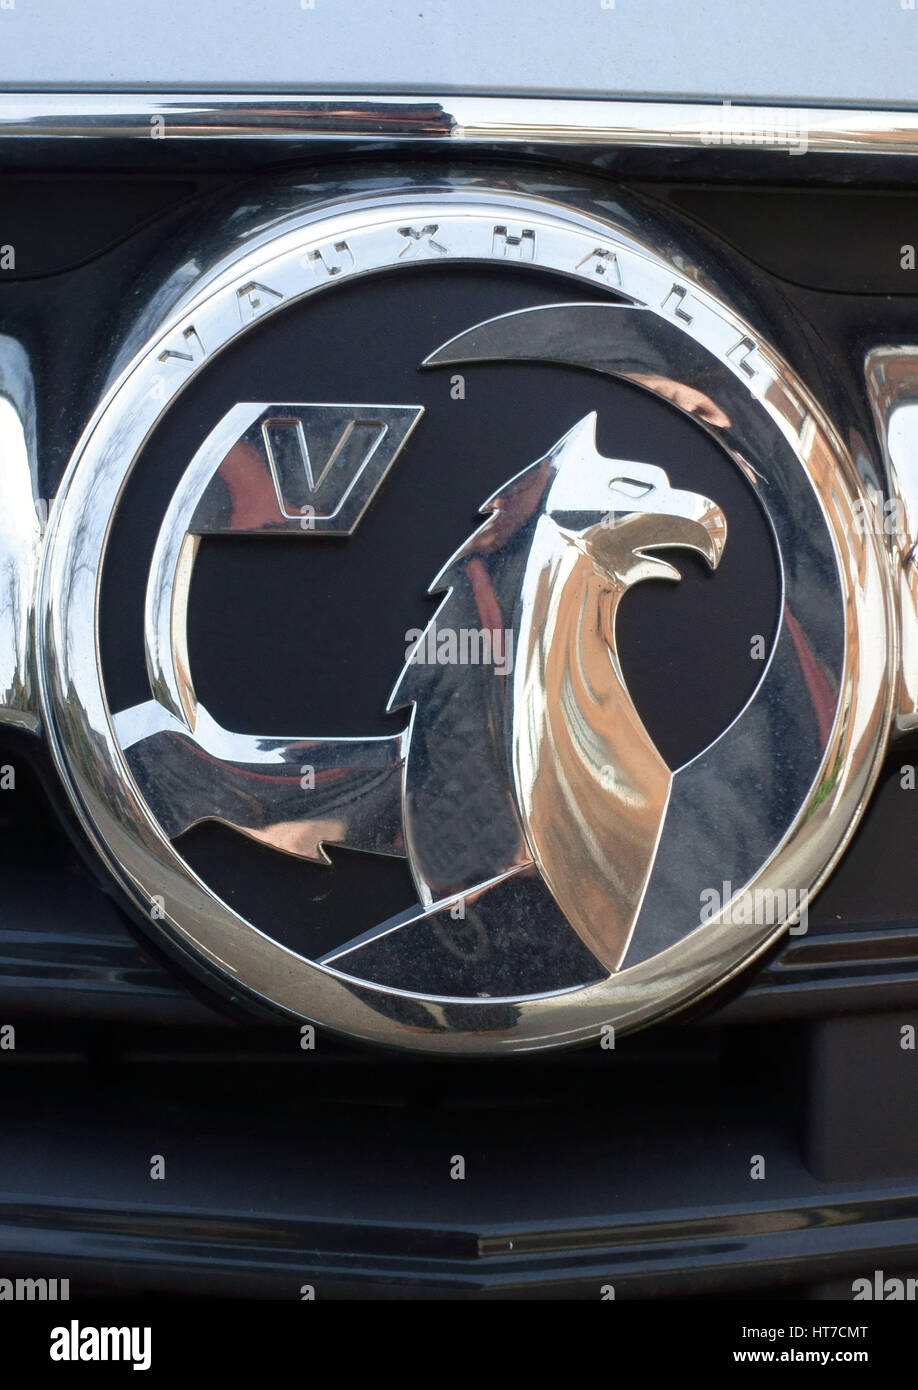 Opel Auto Logo Aufkleber Abzeichen individuell aussehen wie der